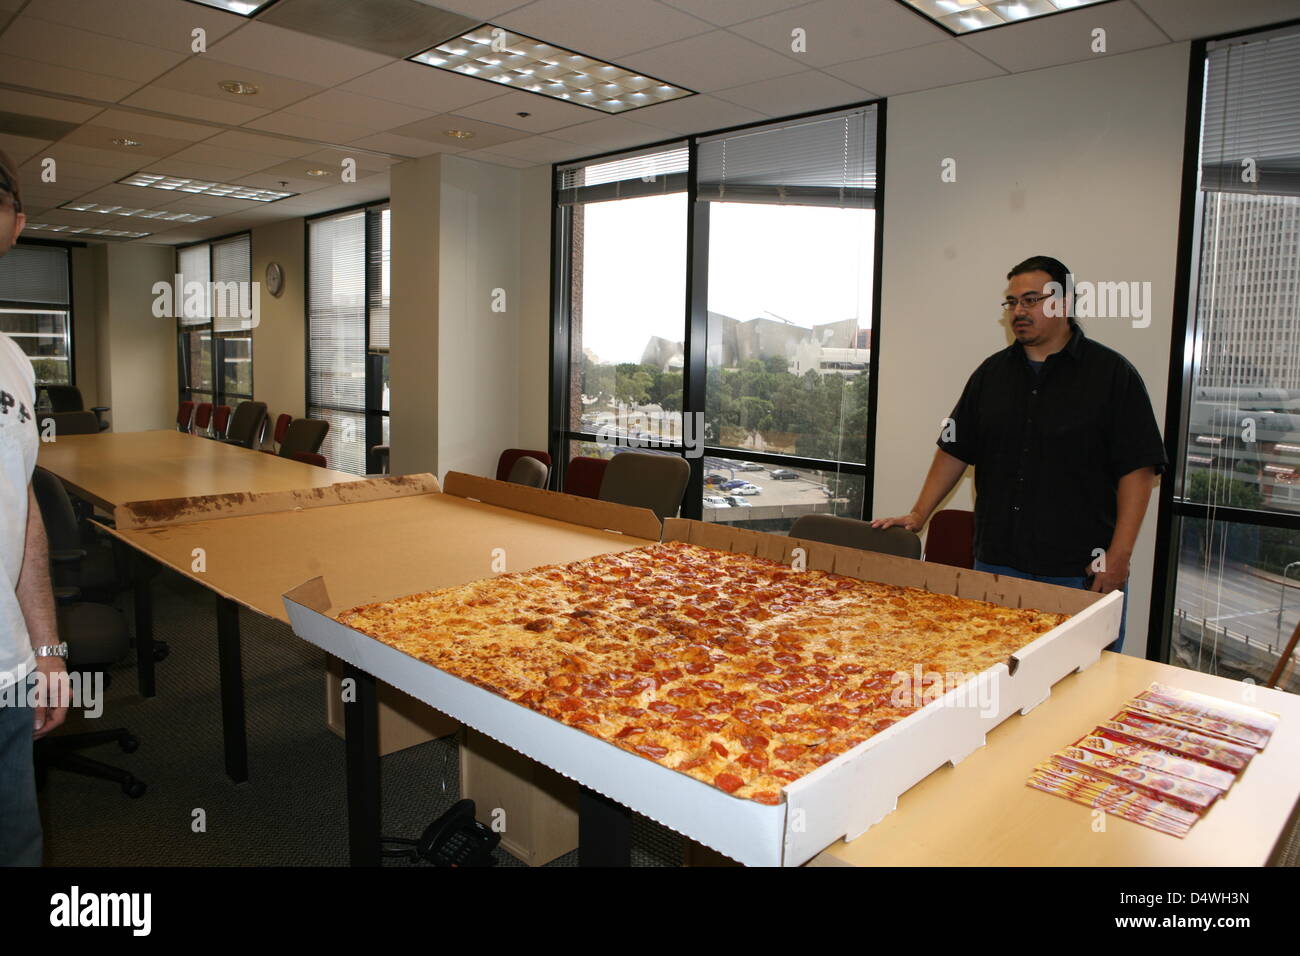 28. Februar 2013, Kalifornien, bekannt gegeben, dass Big Mama und Papas Pizzeria befindet sich in Los Angeles, Kalifornien, hält USA - GUINNESS WORLD RECORDS den Rekord für die größte handelsübliche Pizza in der Welt seit 2010. Die Größe beträgt 1m 37cm 1m 37 cm und kann ca. 50 bis 100 Personen dienen. Um die größte Pizza der Welt bestellen, ist ein 24 Stunden im Voraus erforderlich. Die Guinness-Rekord-Pizza kostet USD 199,99. Restaurant bietet eine Belohnung von 1.000 USD, wenn 7 Leute die 54'' Pizza innerhalb von 2 Stunden beenden kann. (Foto von Big Mama und Papas Pizzeria/Nippon News) Stockfoto